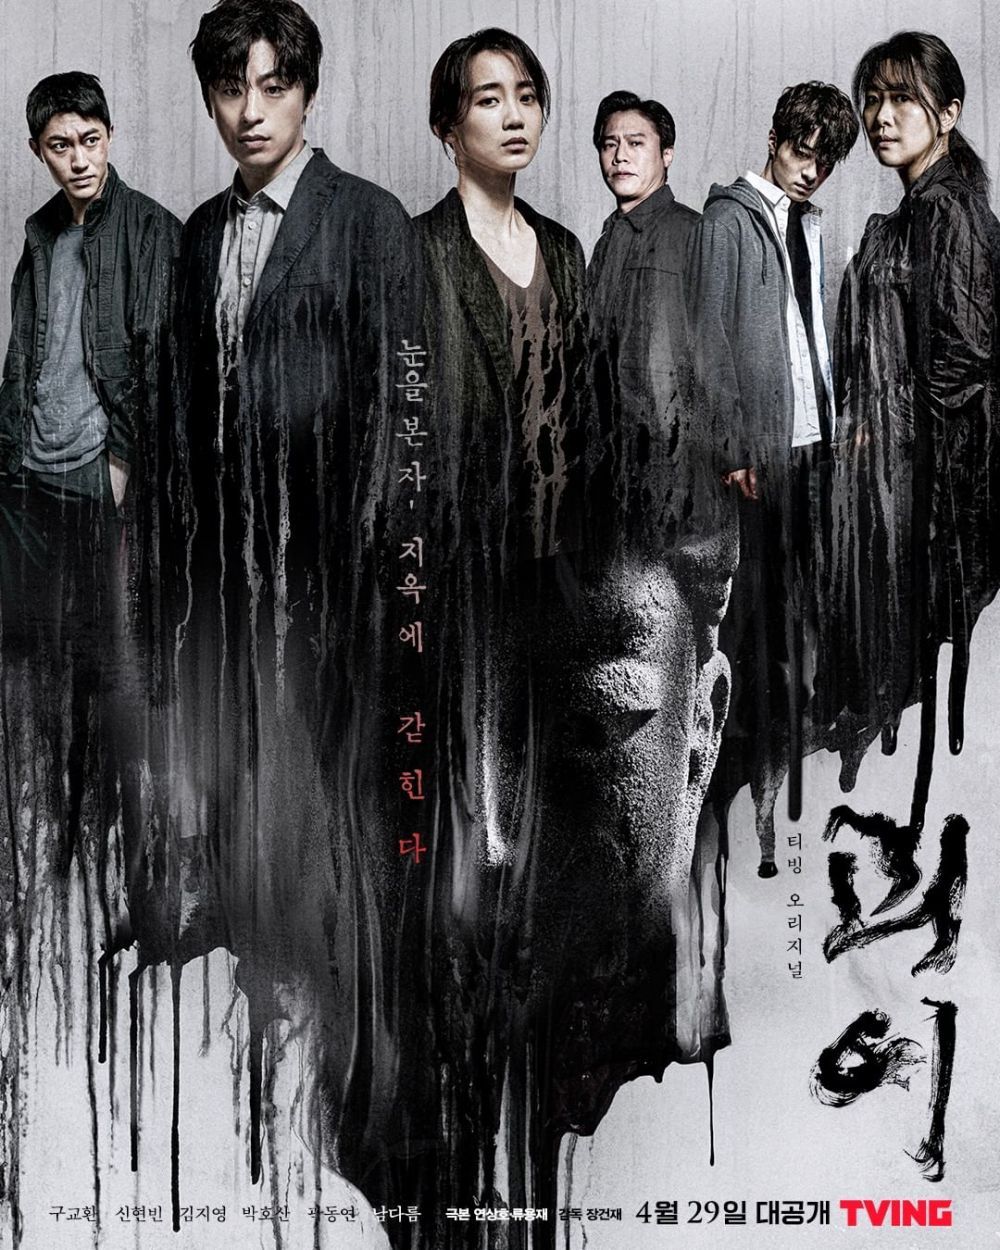 Ada 'The Sound Of Magic', Ini 6 Drama Korea 2022 dengan Episode Pendek